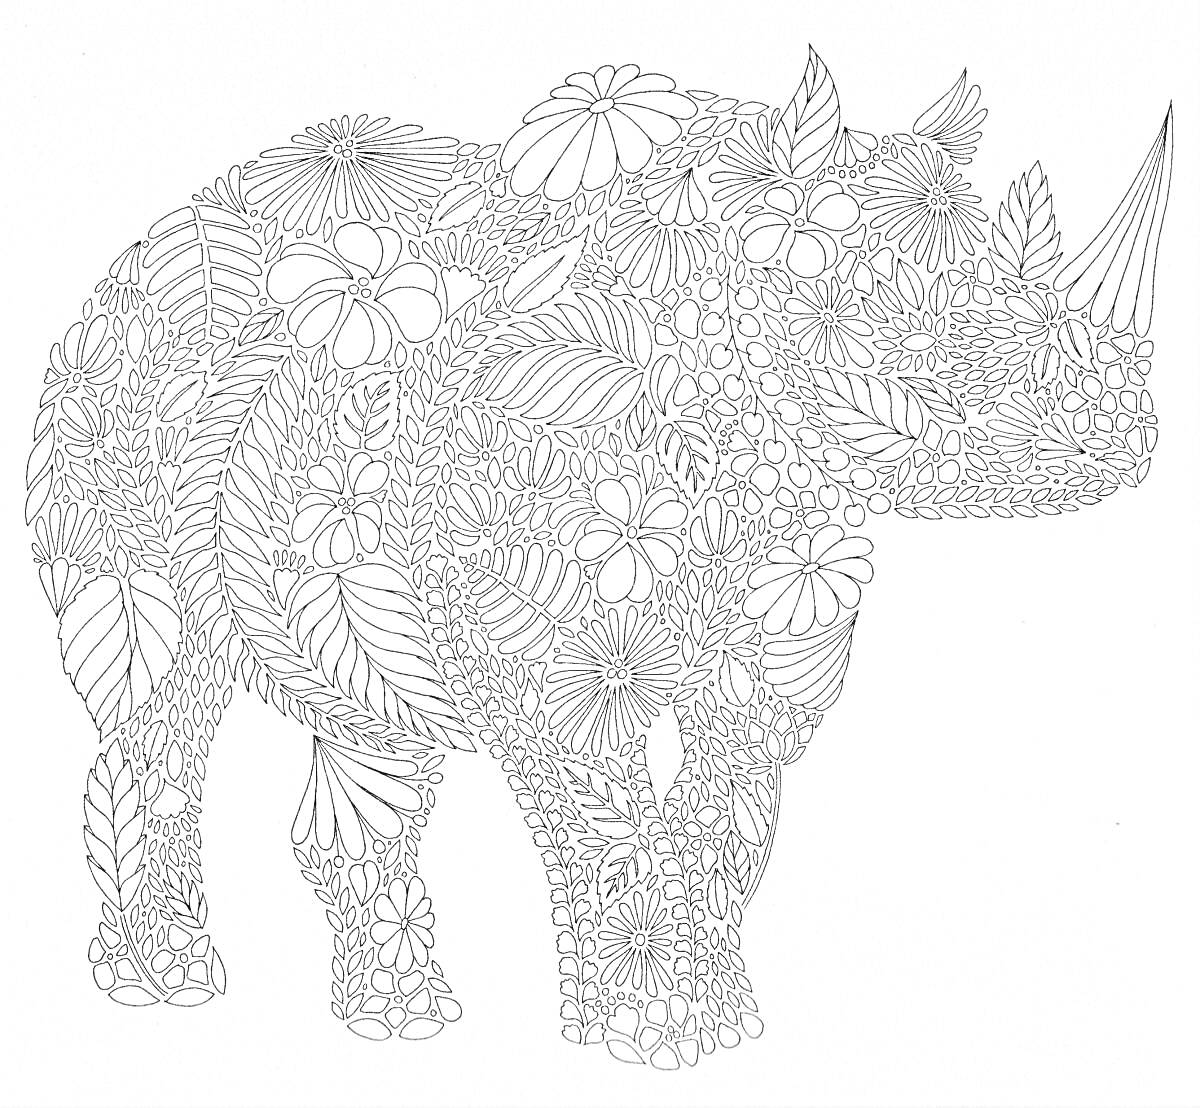 Раскраска Носорог, составленный из цветков и листьев